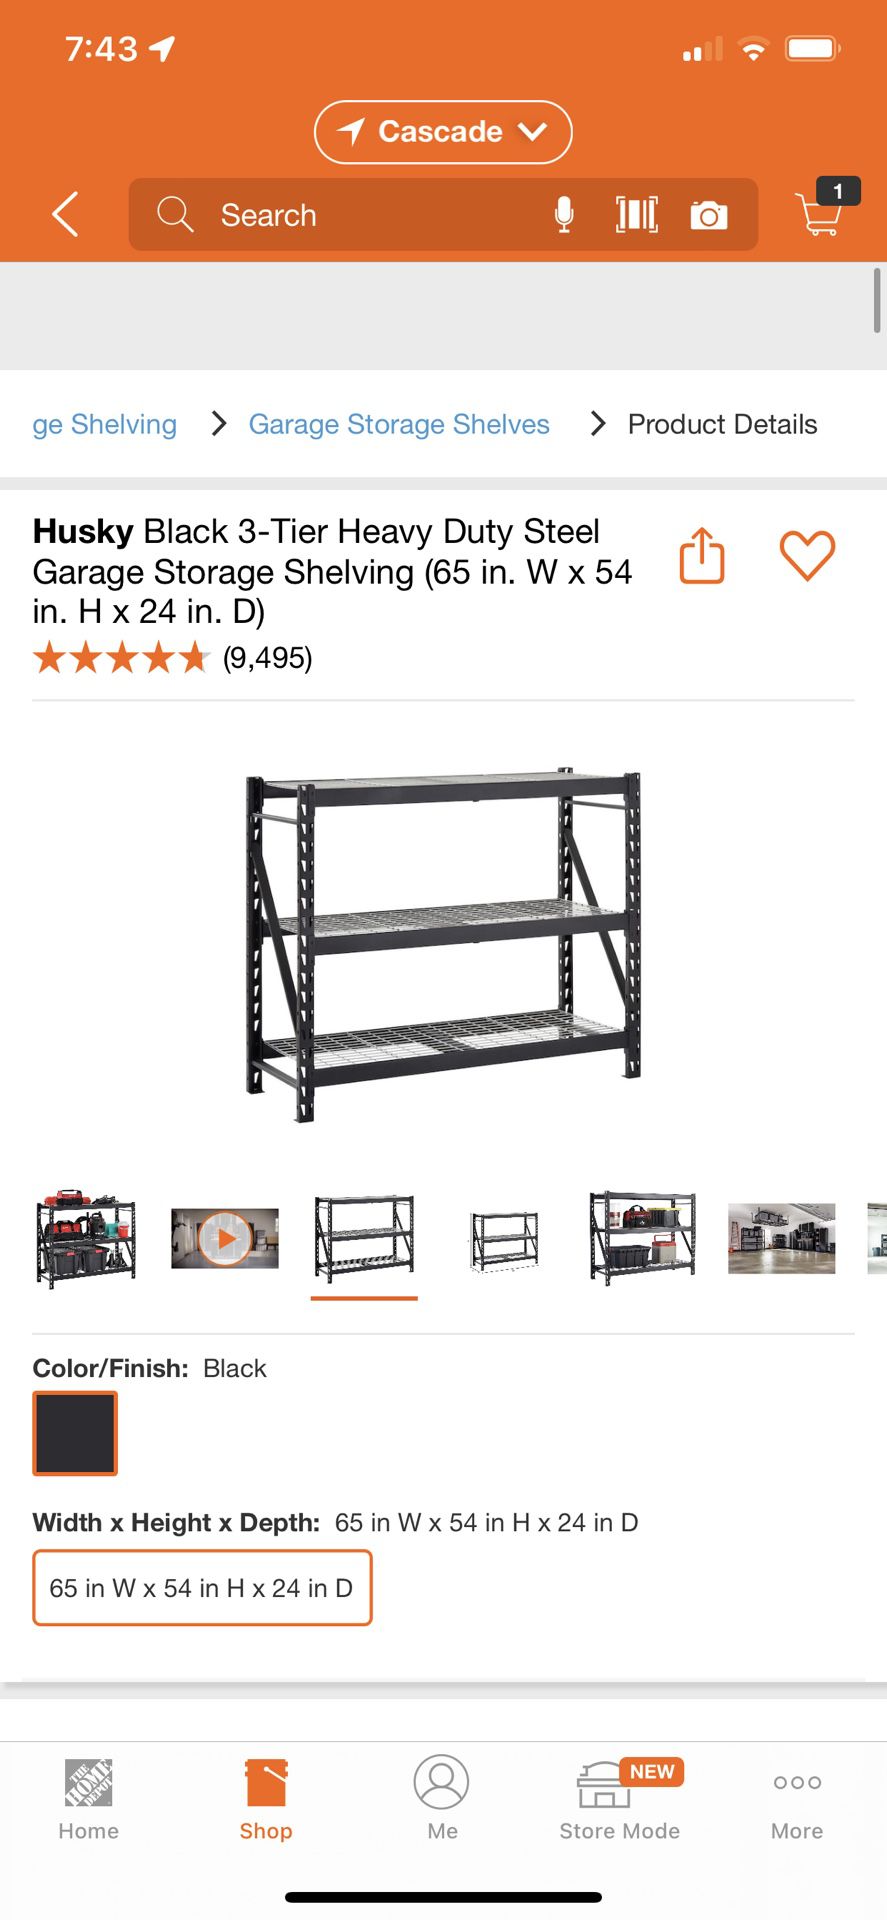 Husky Black 3-Tier Heavy Duty Industrial Welded Steel Garage Shelving Unit 65 in W x 54 in H x 24 in D